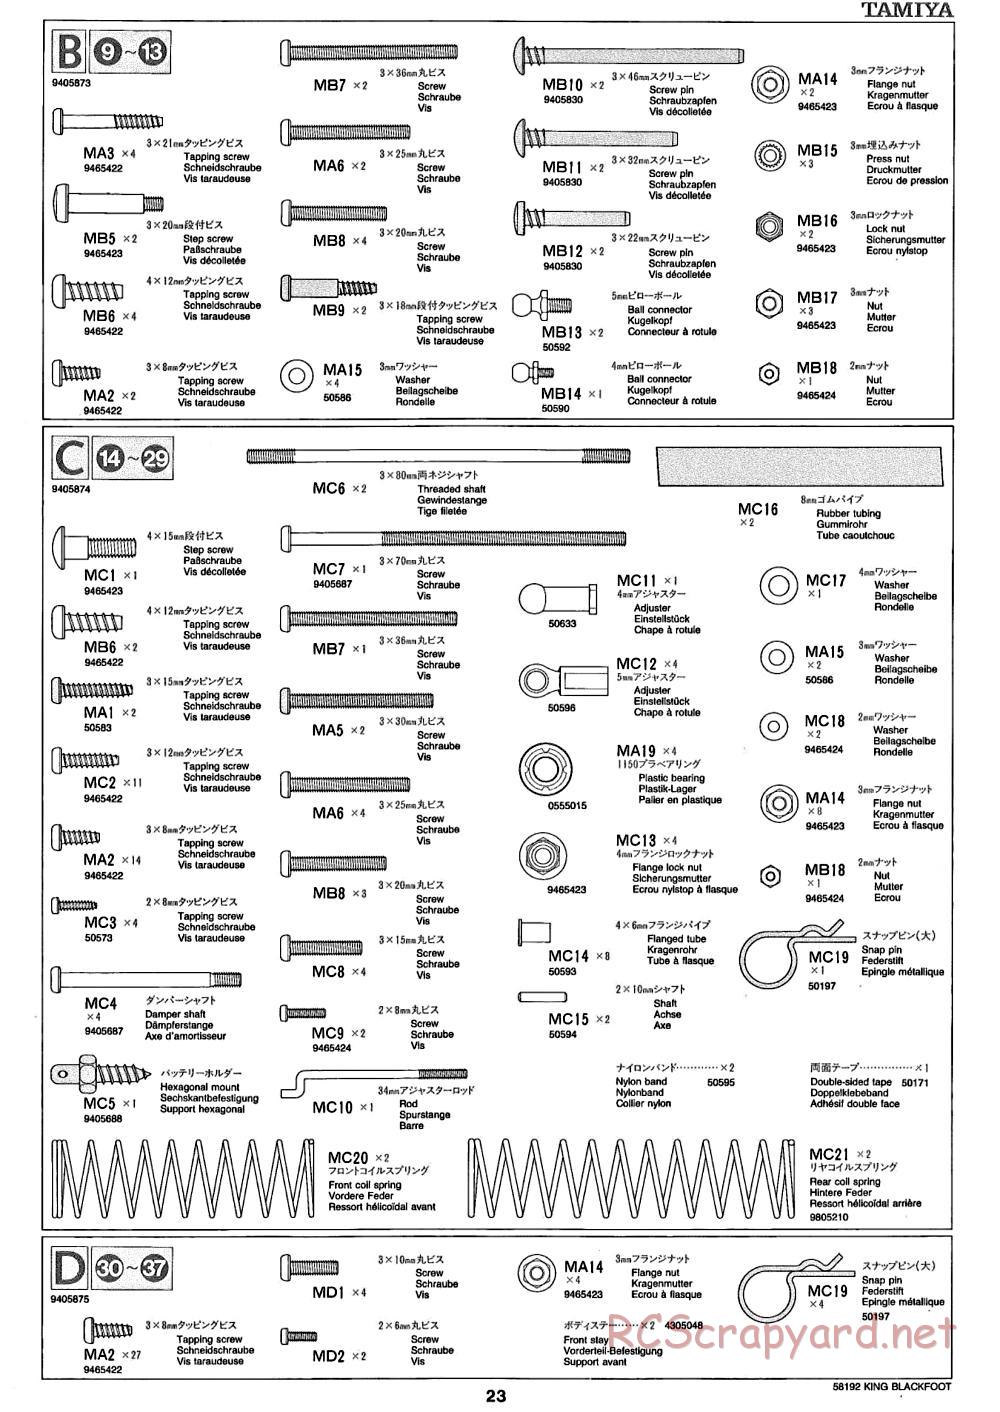 Tamiya - King Blackfoot Chassis - Manual - Page 23